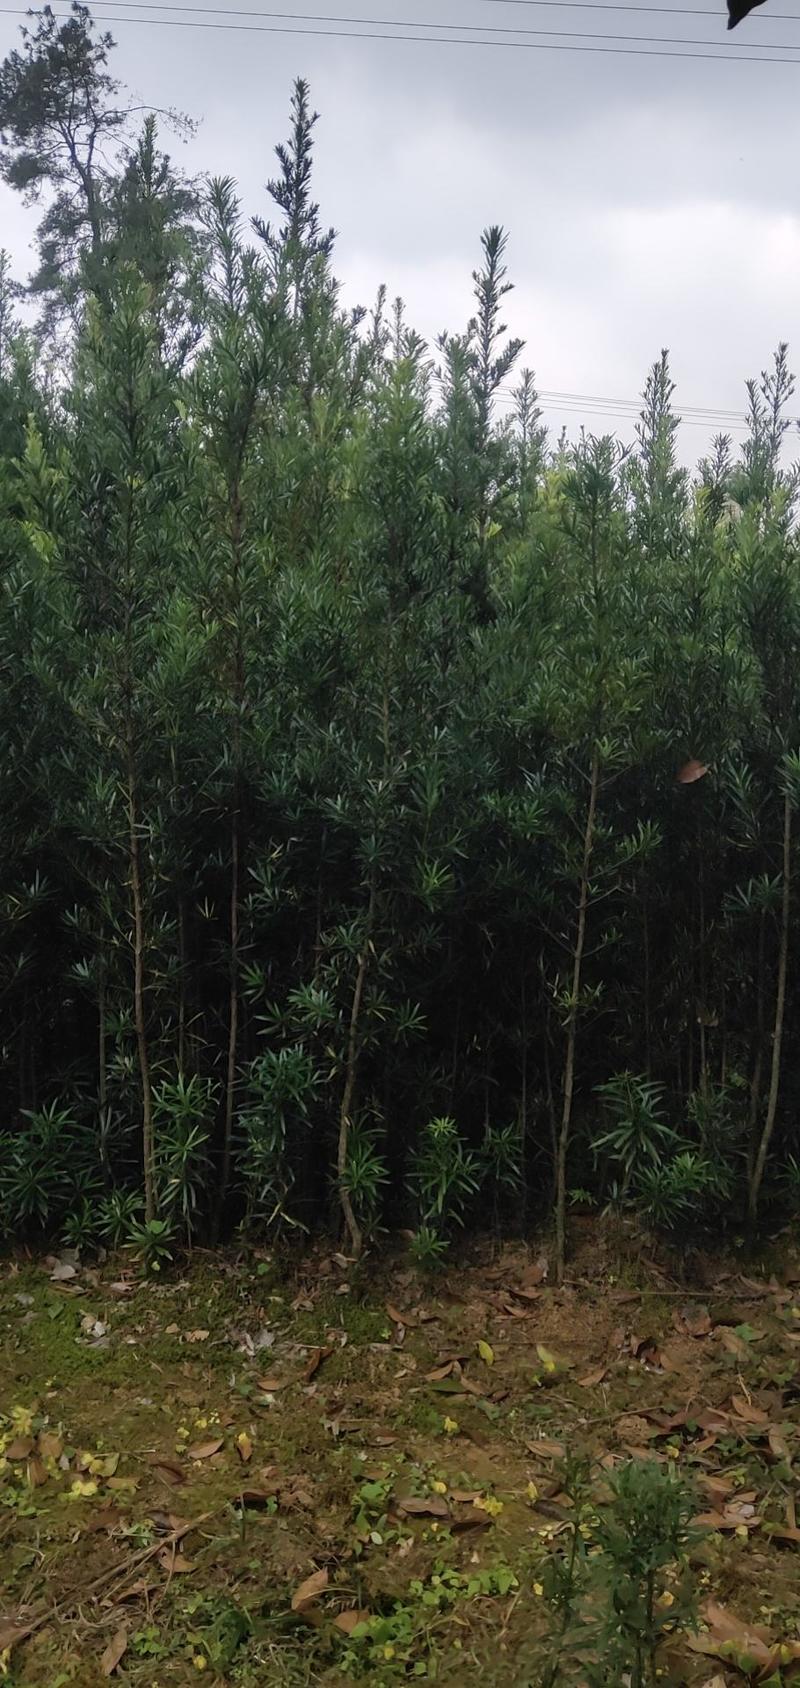 罗汉松苗(地径2～6公分)常年青绿可造型可盆栽包邮